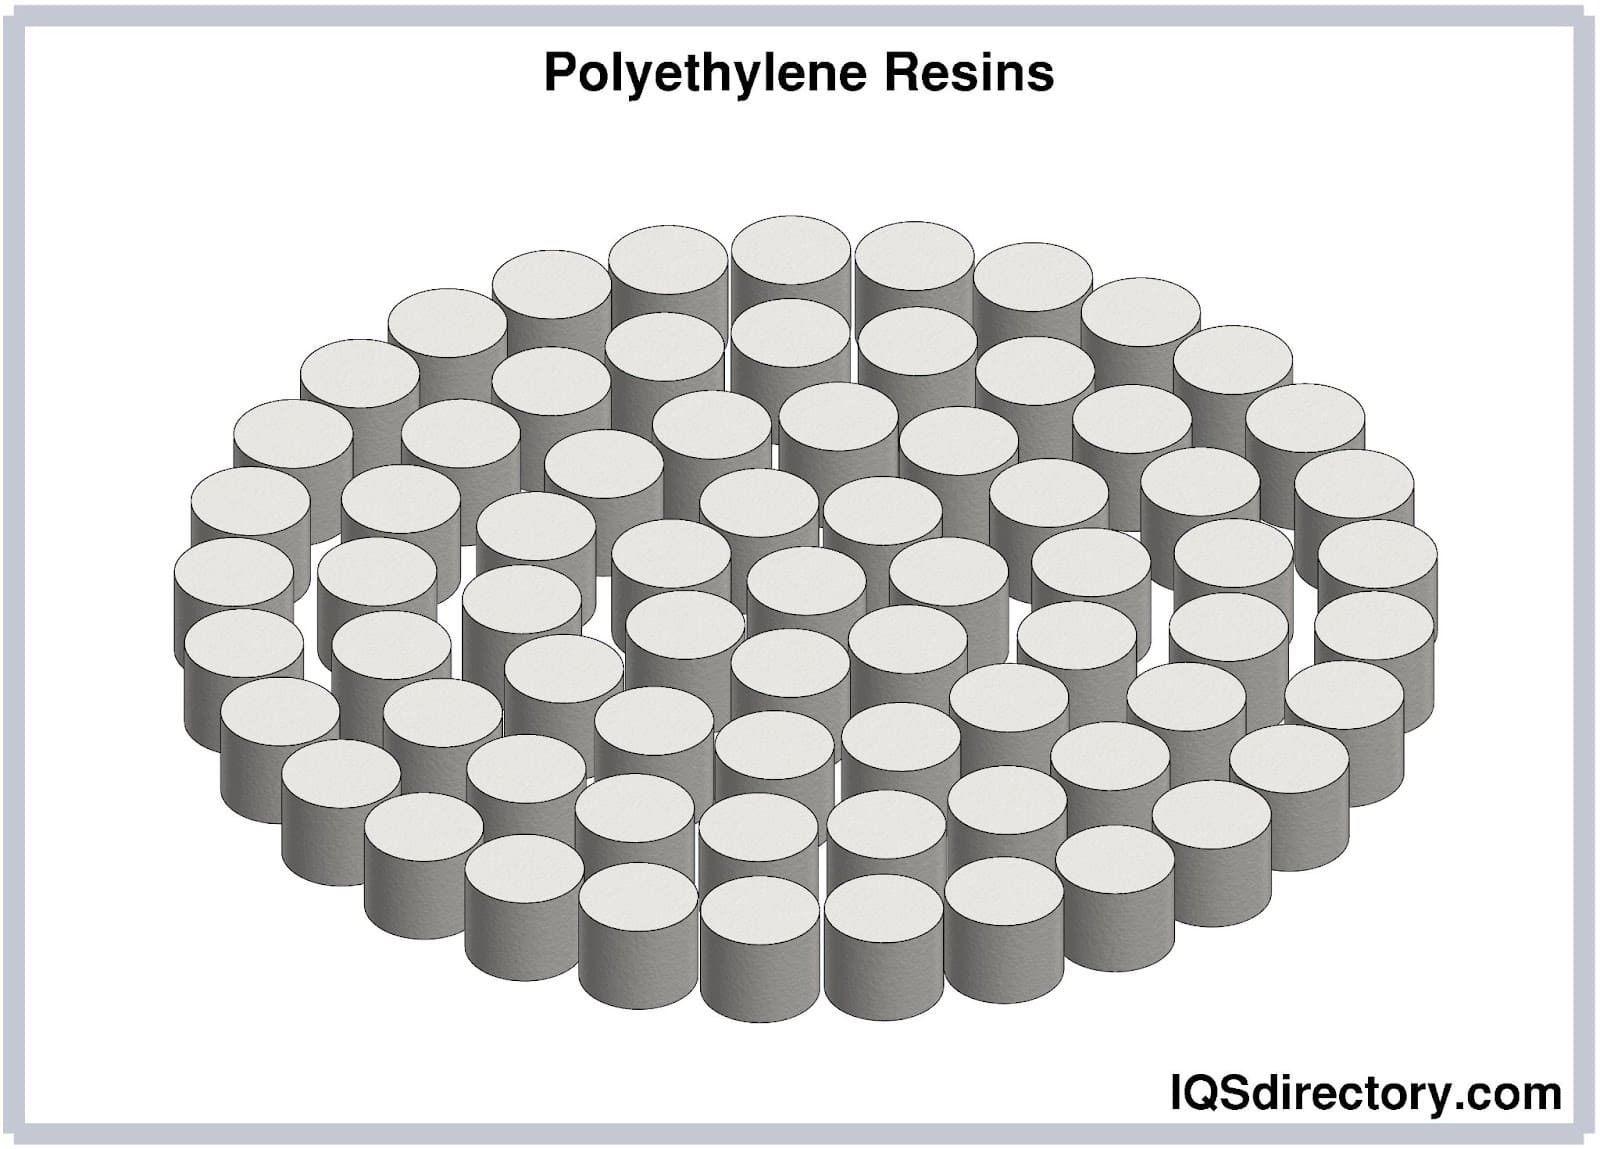 Polyethylene Resins